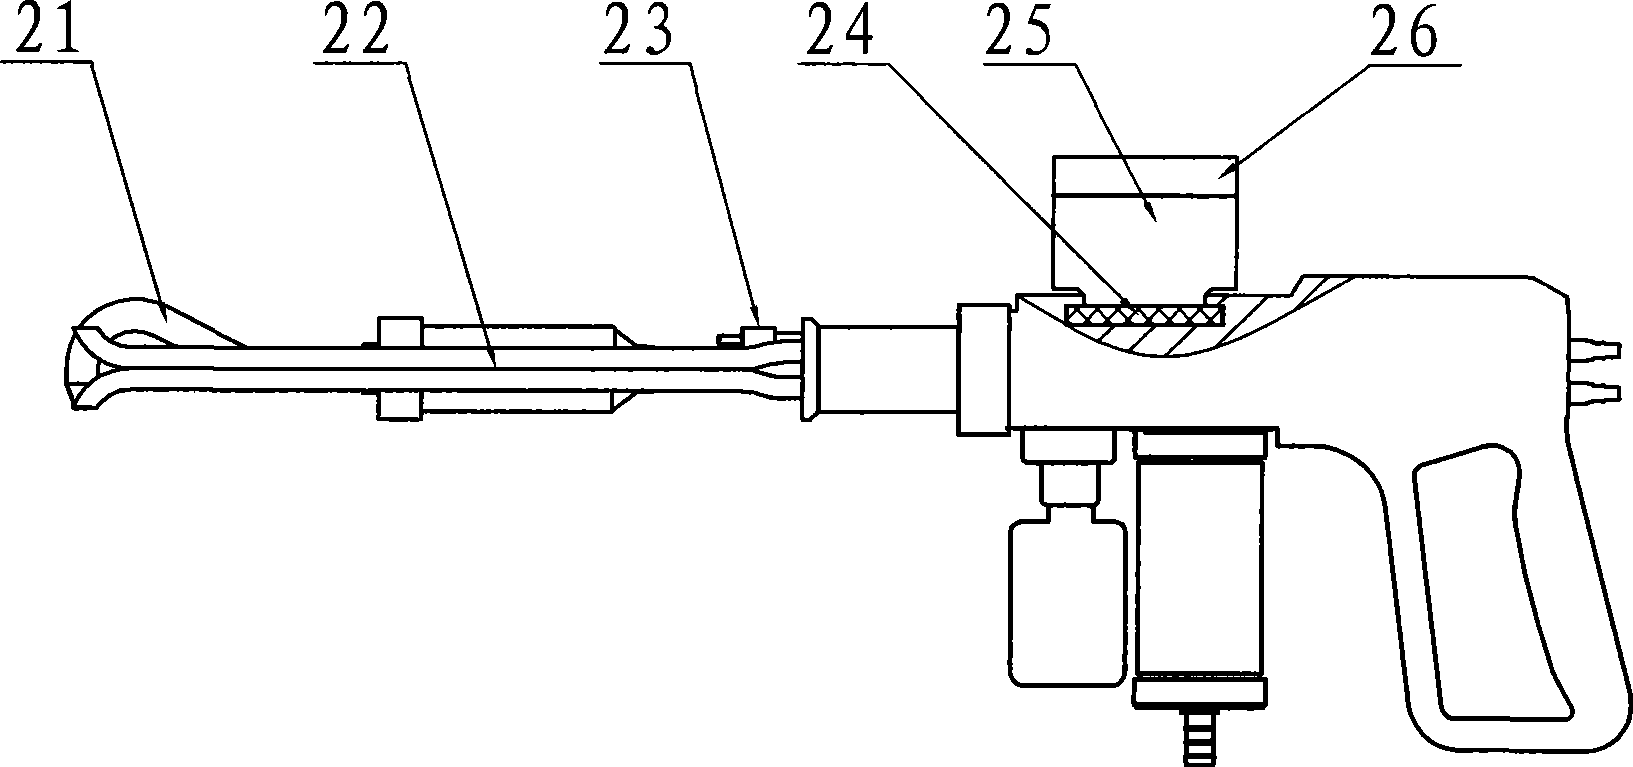 Semi-volatile organic matter sampling technique in exhaust emission pipe